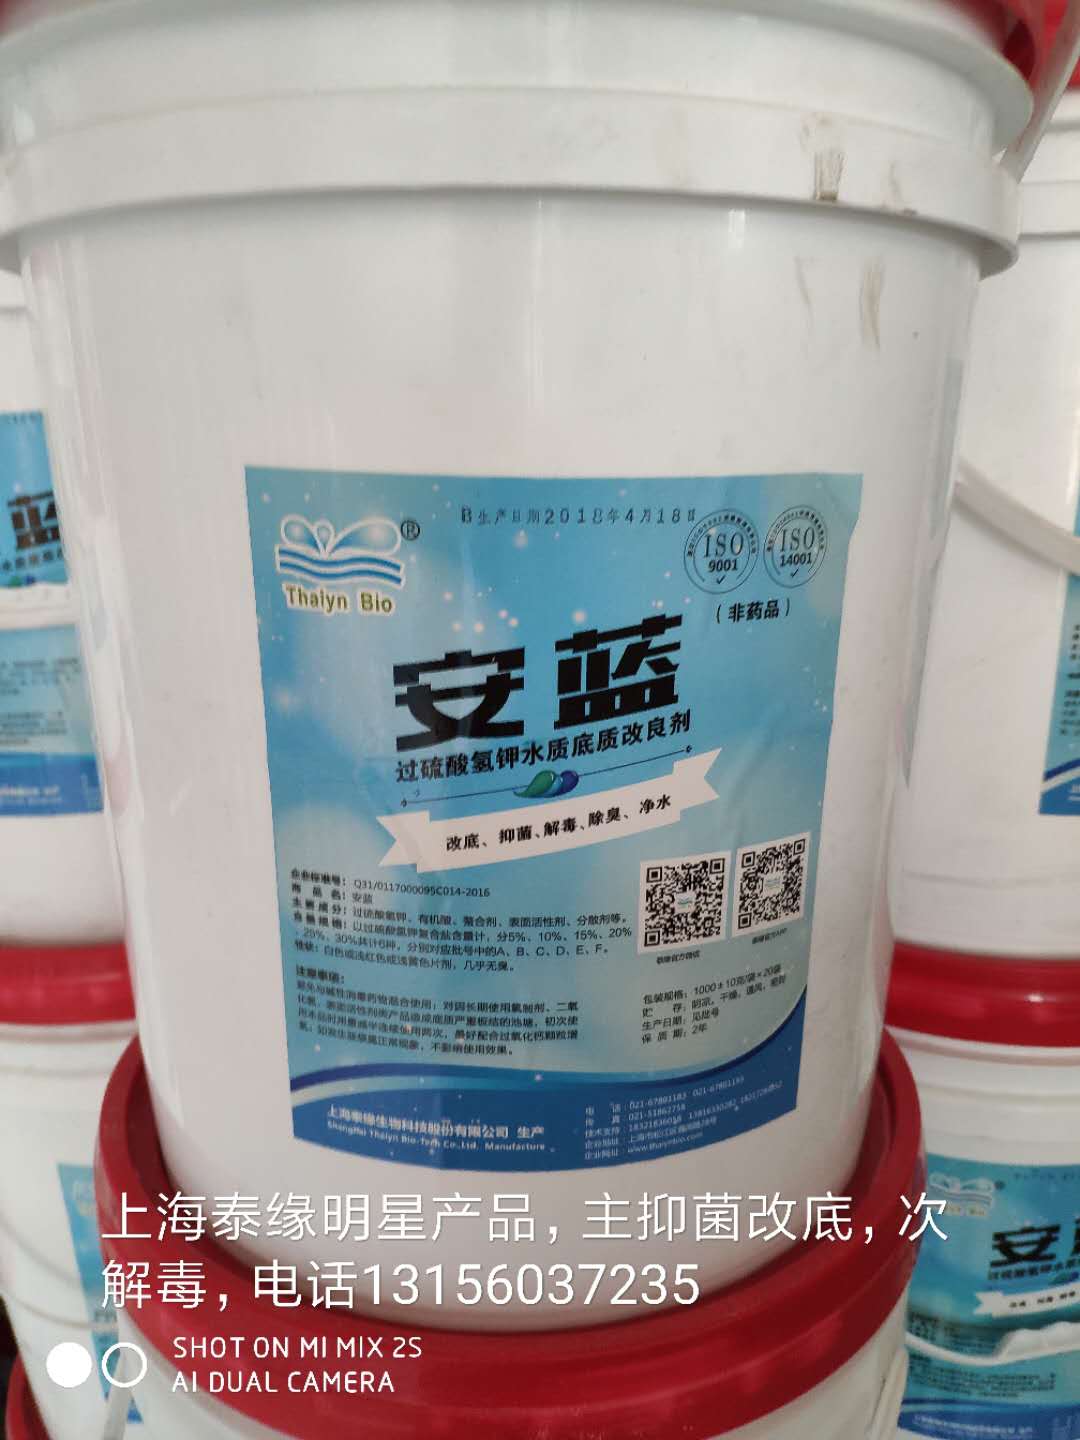 安蓝   上海泰缘  正品过硫酸氢钾复合盐改底产品  解毒除臭净水